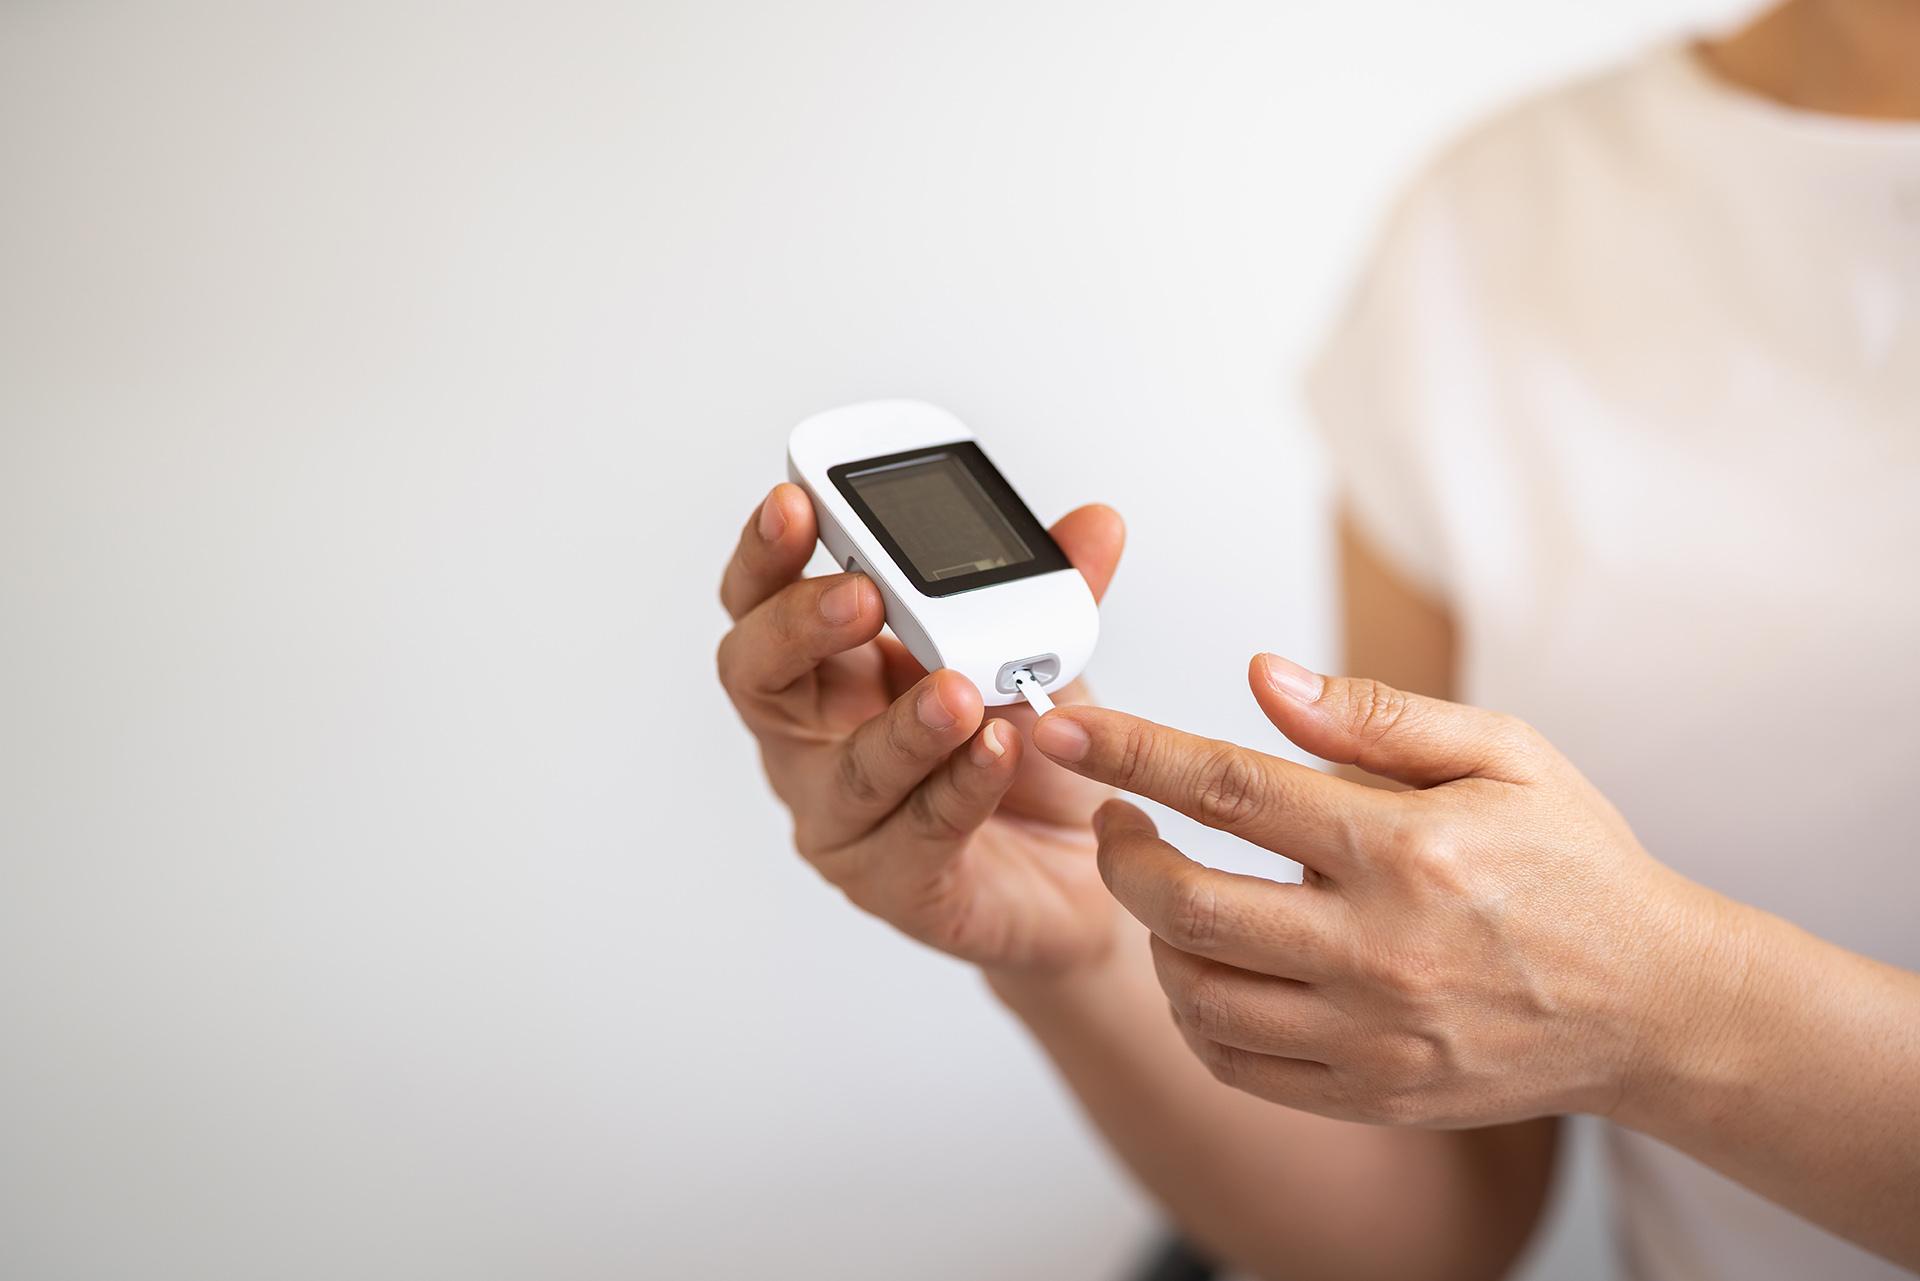 सामान्य मधुमेह रक्त शर्करा स्तर और उनकी जाँच क्यों महत्वपूर्ण है